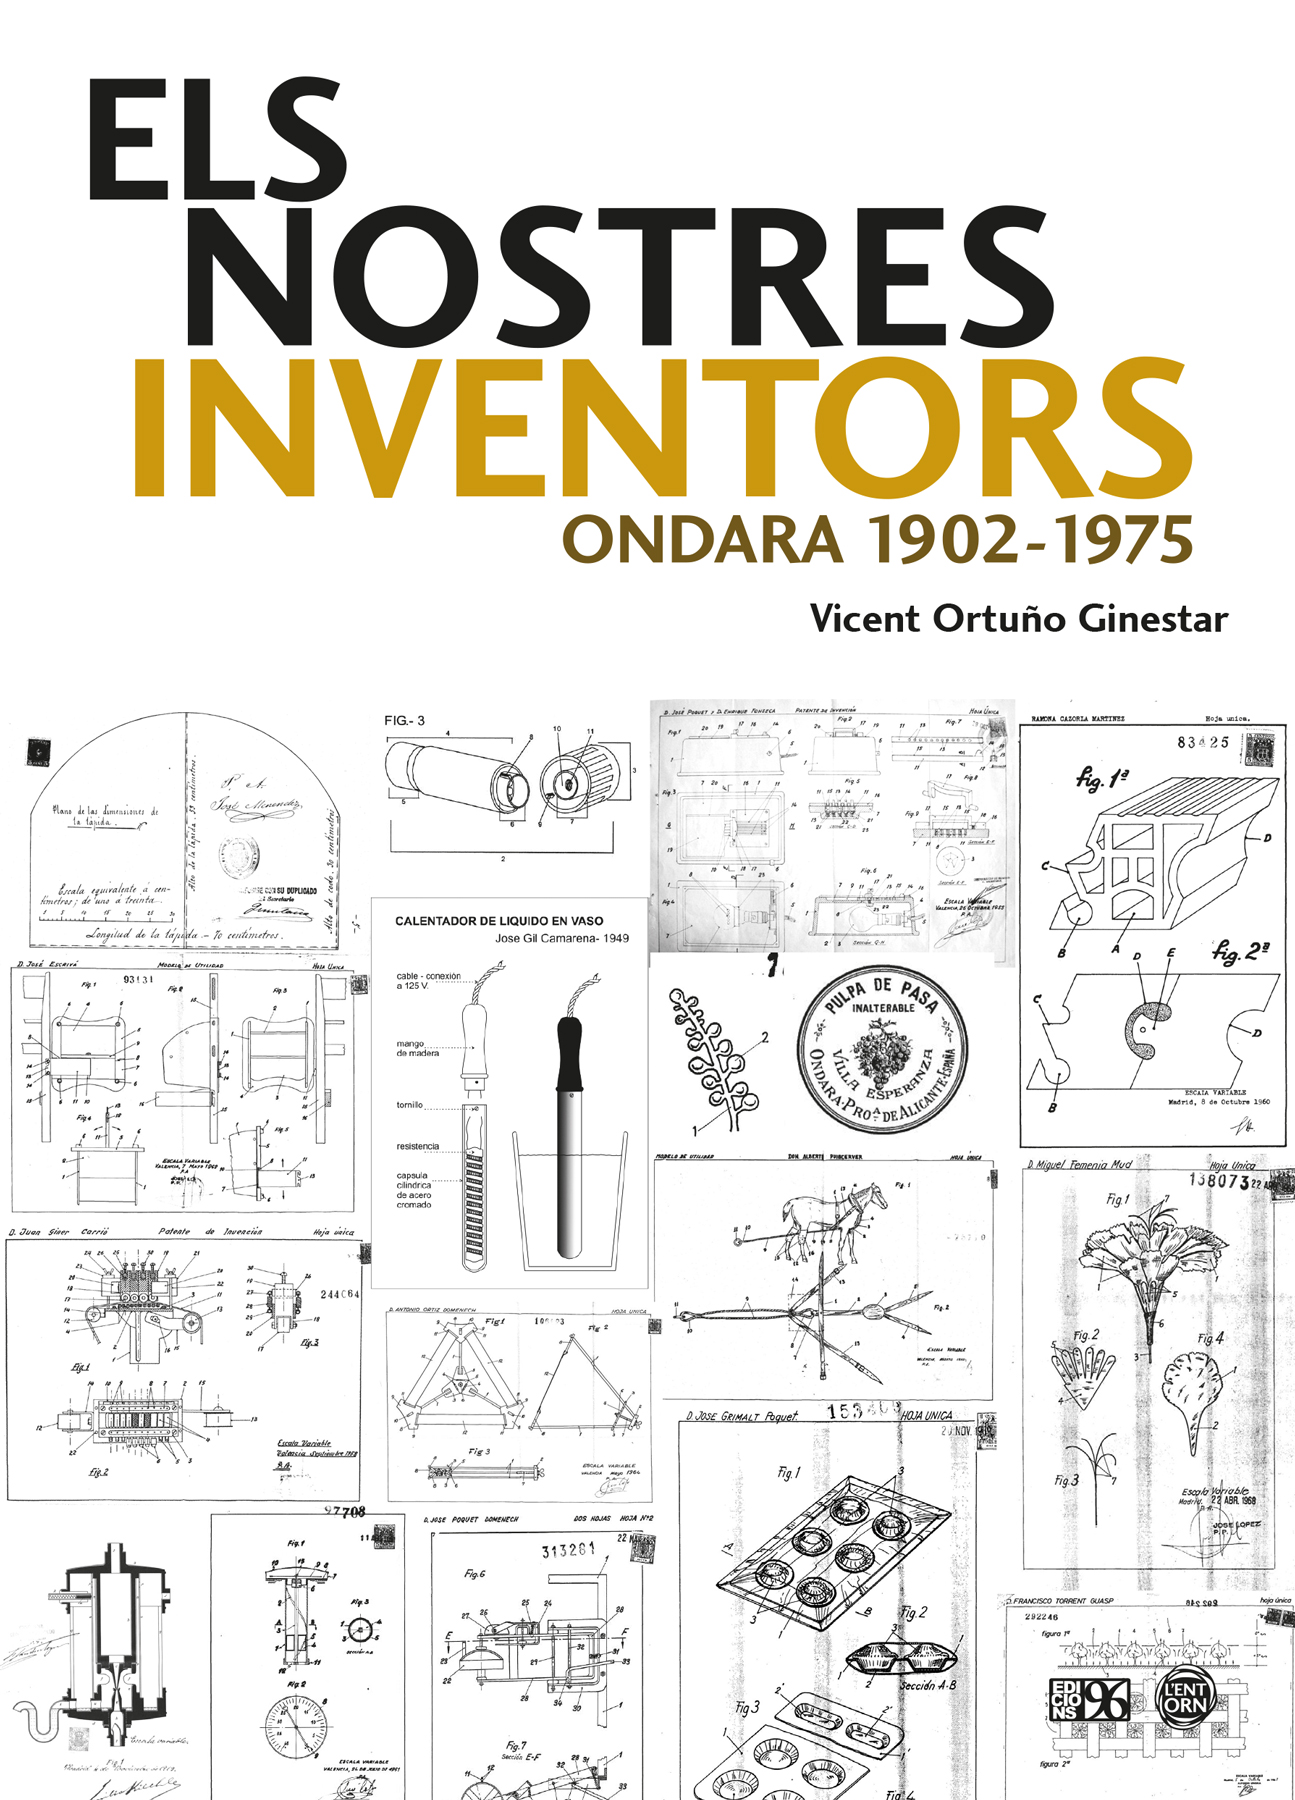 Presentació del llibre “Els nostres inventors. Ondara 1902-1975”